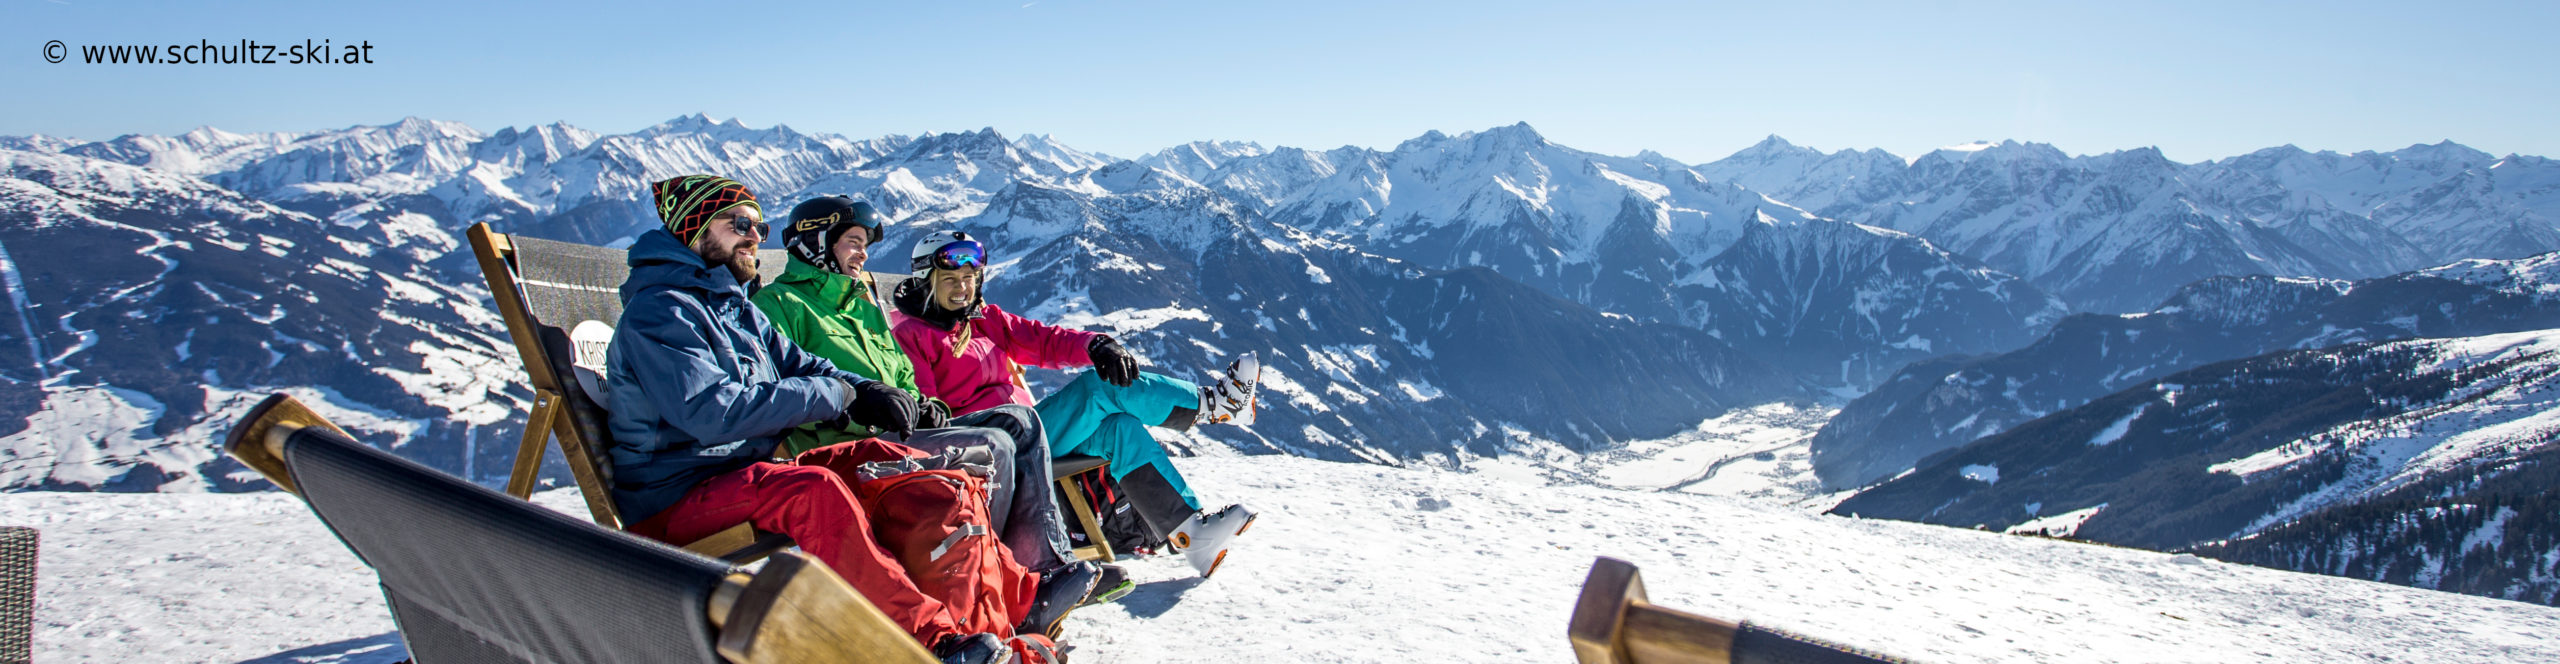 ZILLERTAL – Skiwochenende ab Donnerstag Nachmittag – 3 Skitage – Skisafari Mayrhofen & Kaltenbach 